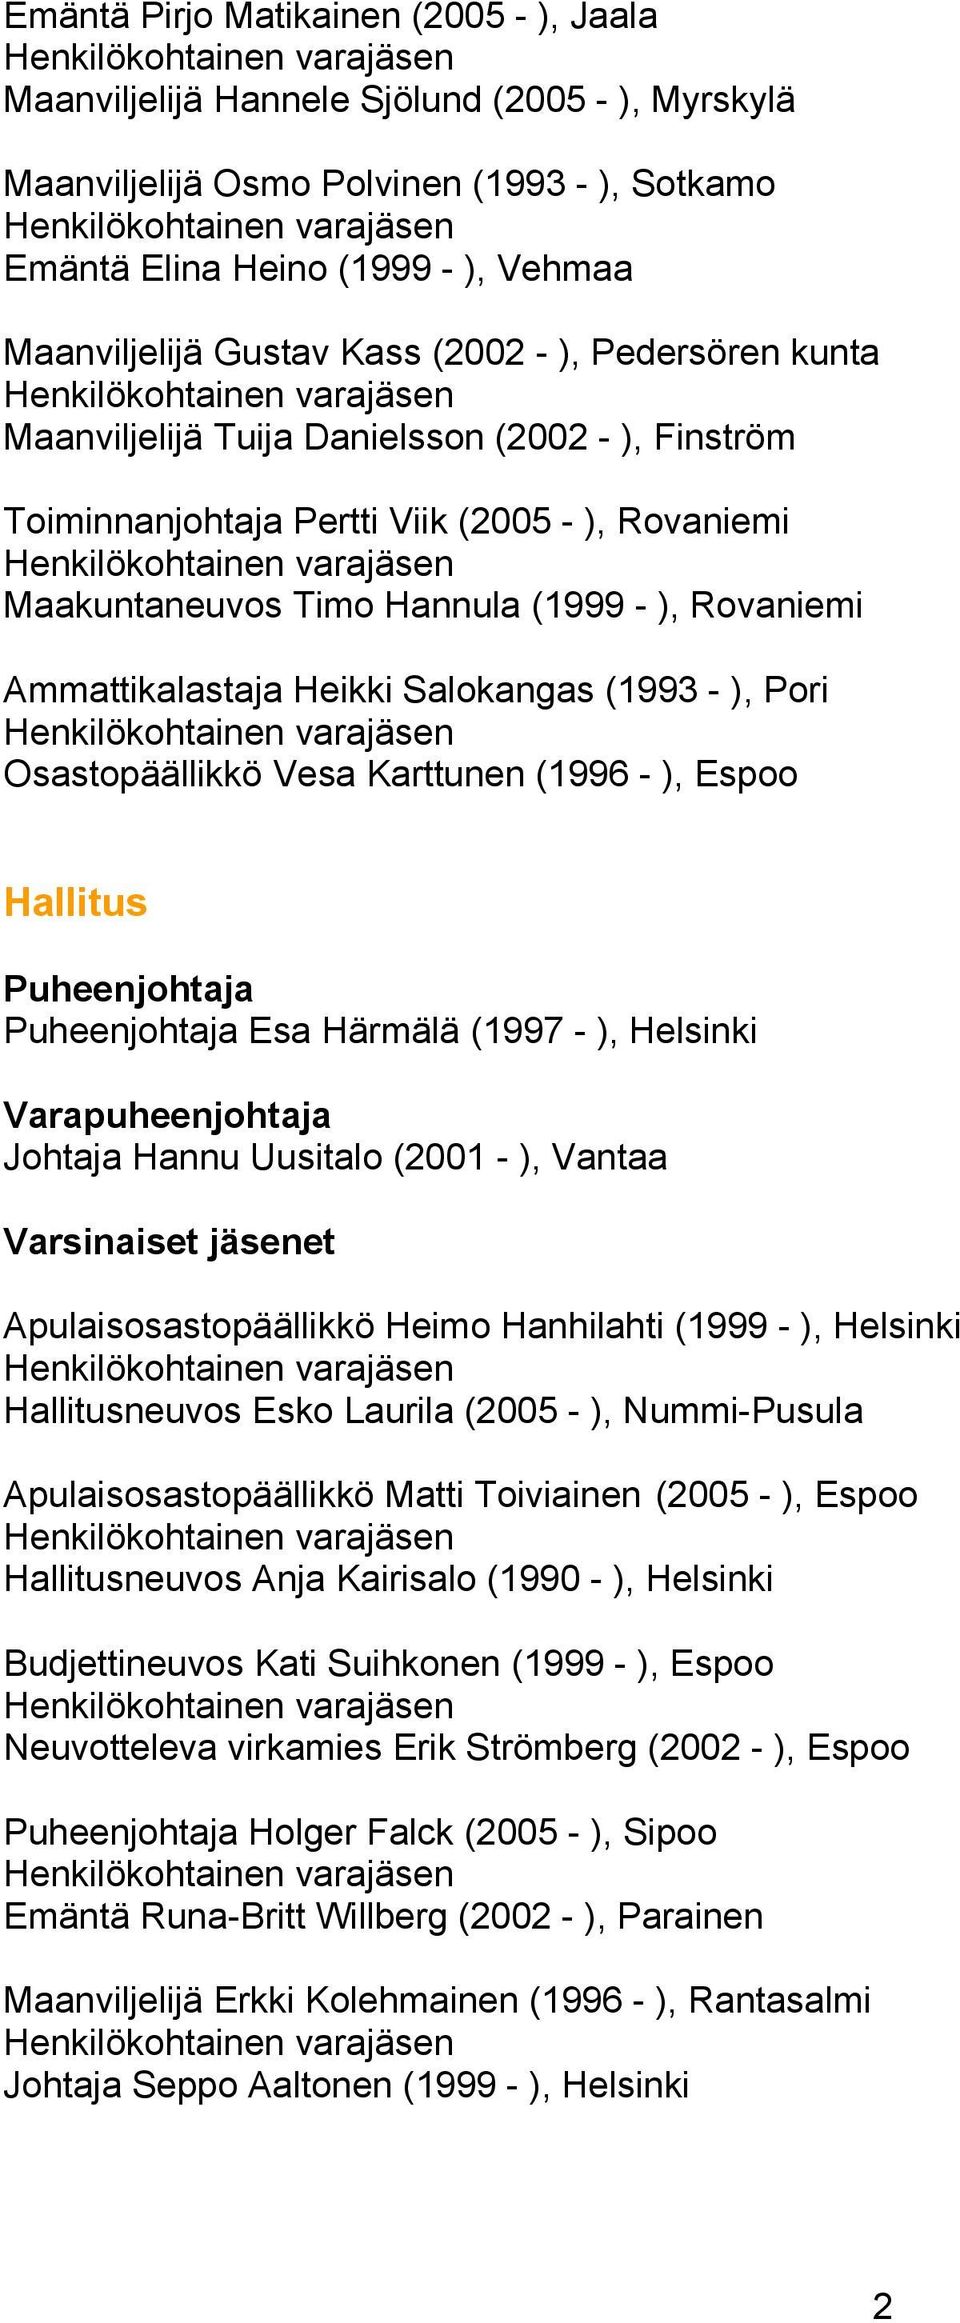 Heikki Salokangas (1993 - ), Pori Osastopäällikkö Vesa Karttunen (1996 - ), Espoo Hallitus Esa Härmälä (1997 - ), Helsinki Varapuheenjohtaja Johtaja Hannu Uusitalo (2001 - ), Vantaa Varsinaiset